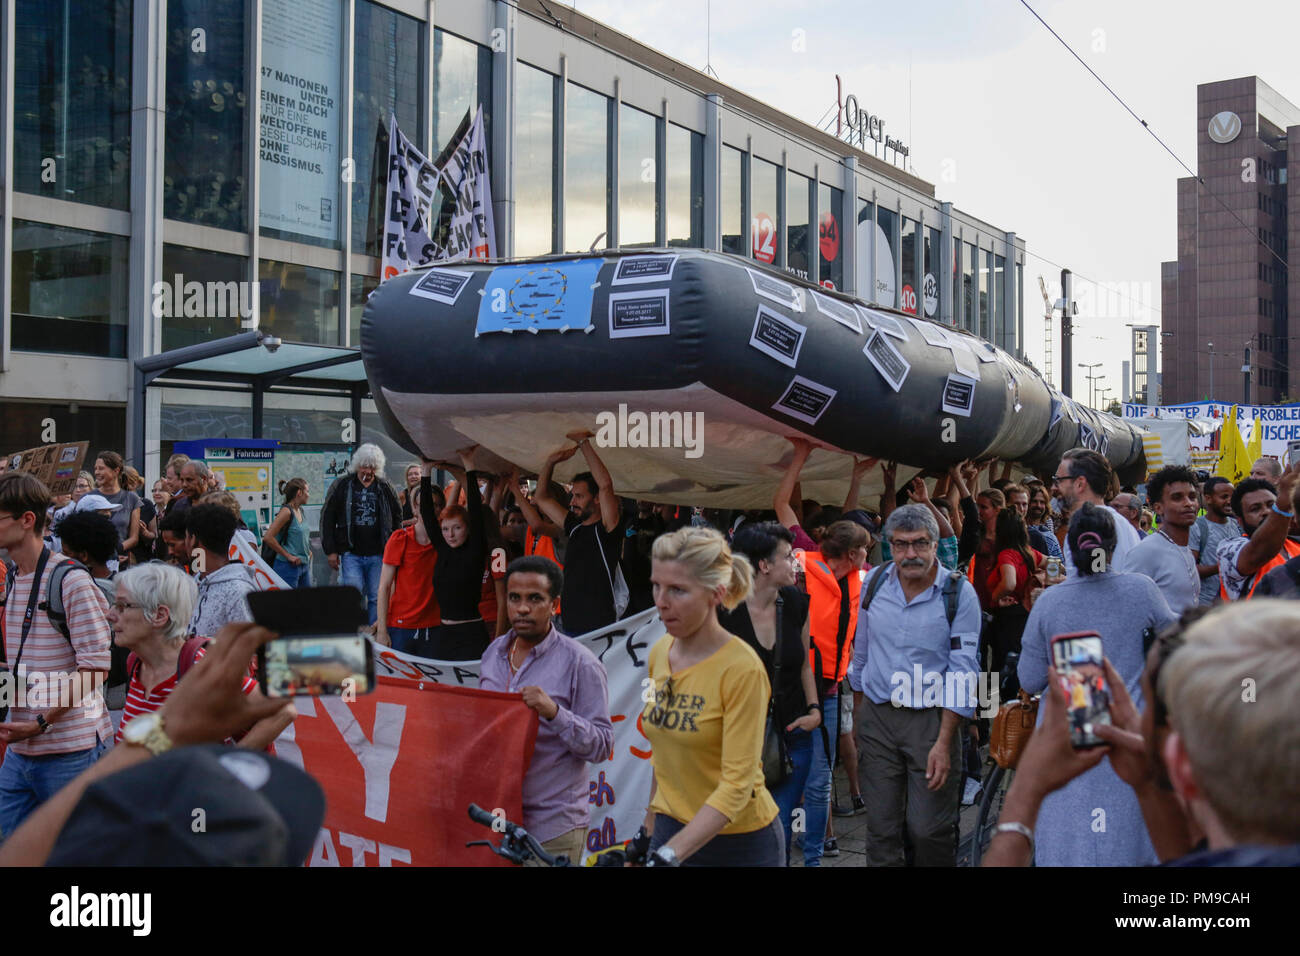 Francfort, Allemagne. 17 septembre 2018. Transporter les militants d'un grand bateau gonflable, similaires à ceux utilisés par les réfugiés en Méditerranée, à la manifestation. Autour de 6.300 manifestants ont défilé à Francfort, à l'appui de l'Seebrucke (par mer) mouvement pour le sauvetage des réfugiés de la mer Méditerranée. Ils ont également protesté contre les politiques restrictives envers les réfugiés de l'allemand Horst Seehofer, le ministre fédéral de l'intérieur, qui était due à la parole lors d'un congrès à Francfort le jour suivant, mais dont l'aspect a été annulée. Crédit : Michael Debets/Alamy Live News Banque D'Images